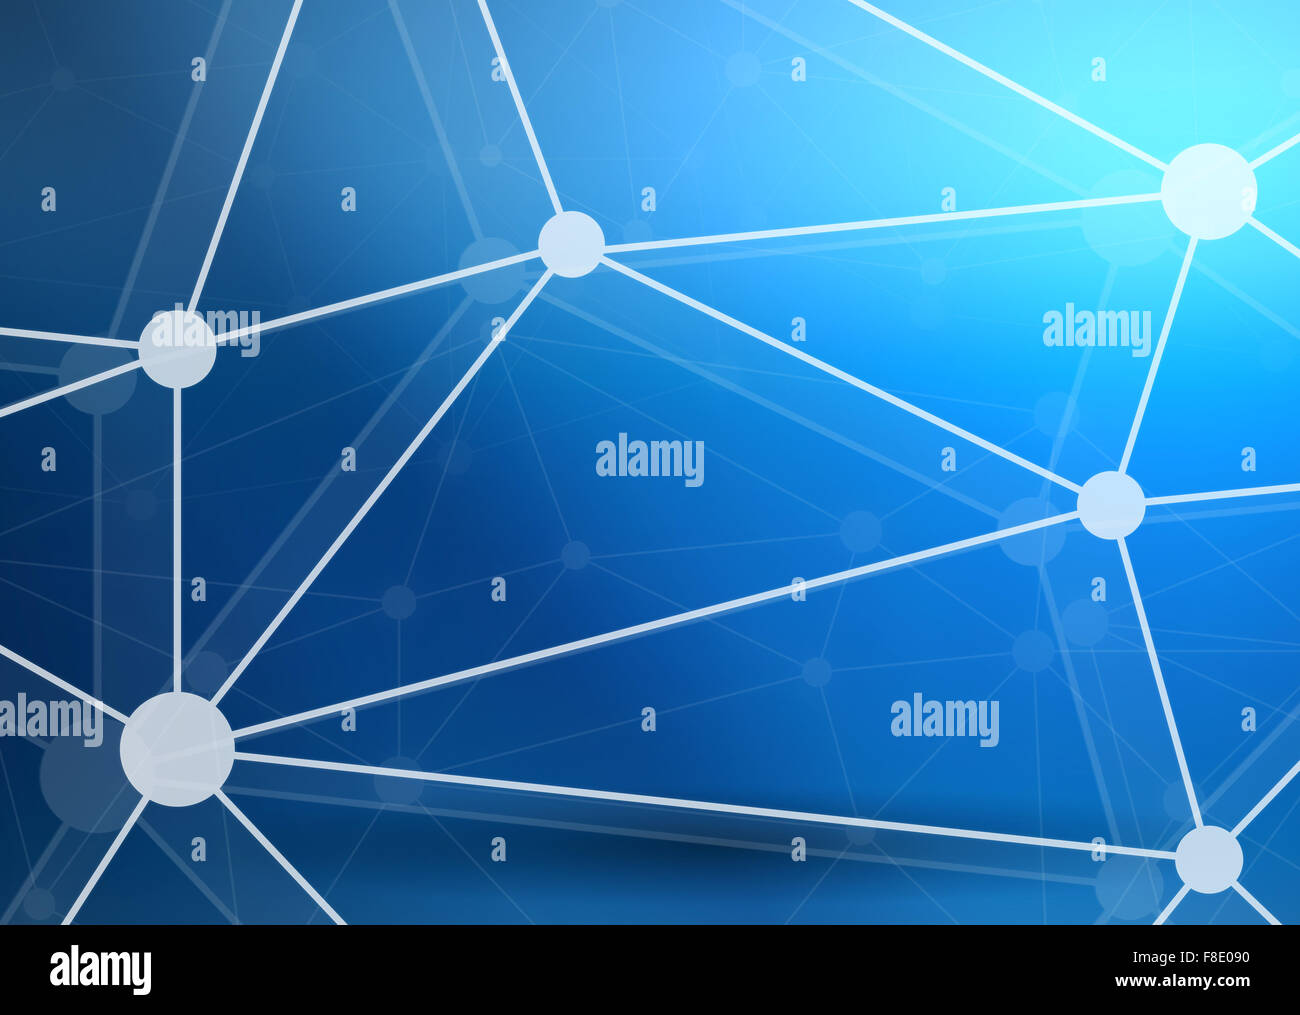 Netzwerk Hintergrund abstrakt Polygon Dreieck und Punkte Stockfoto